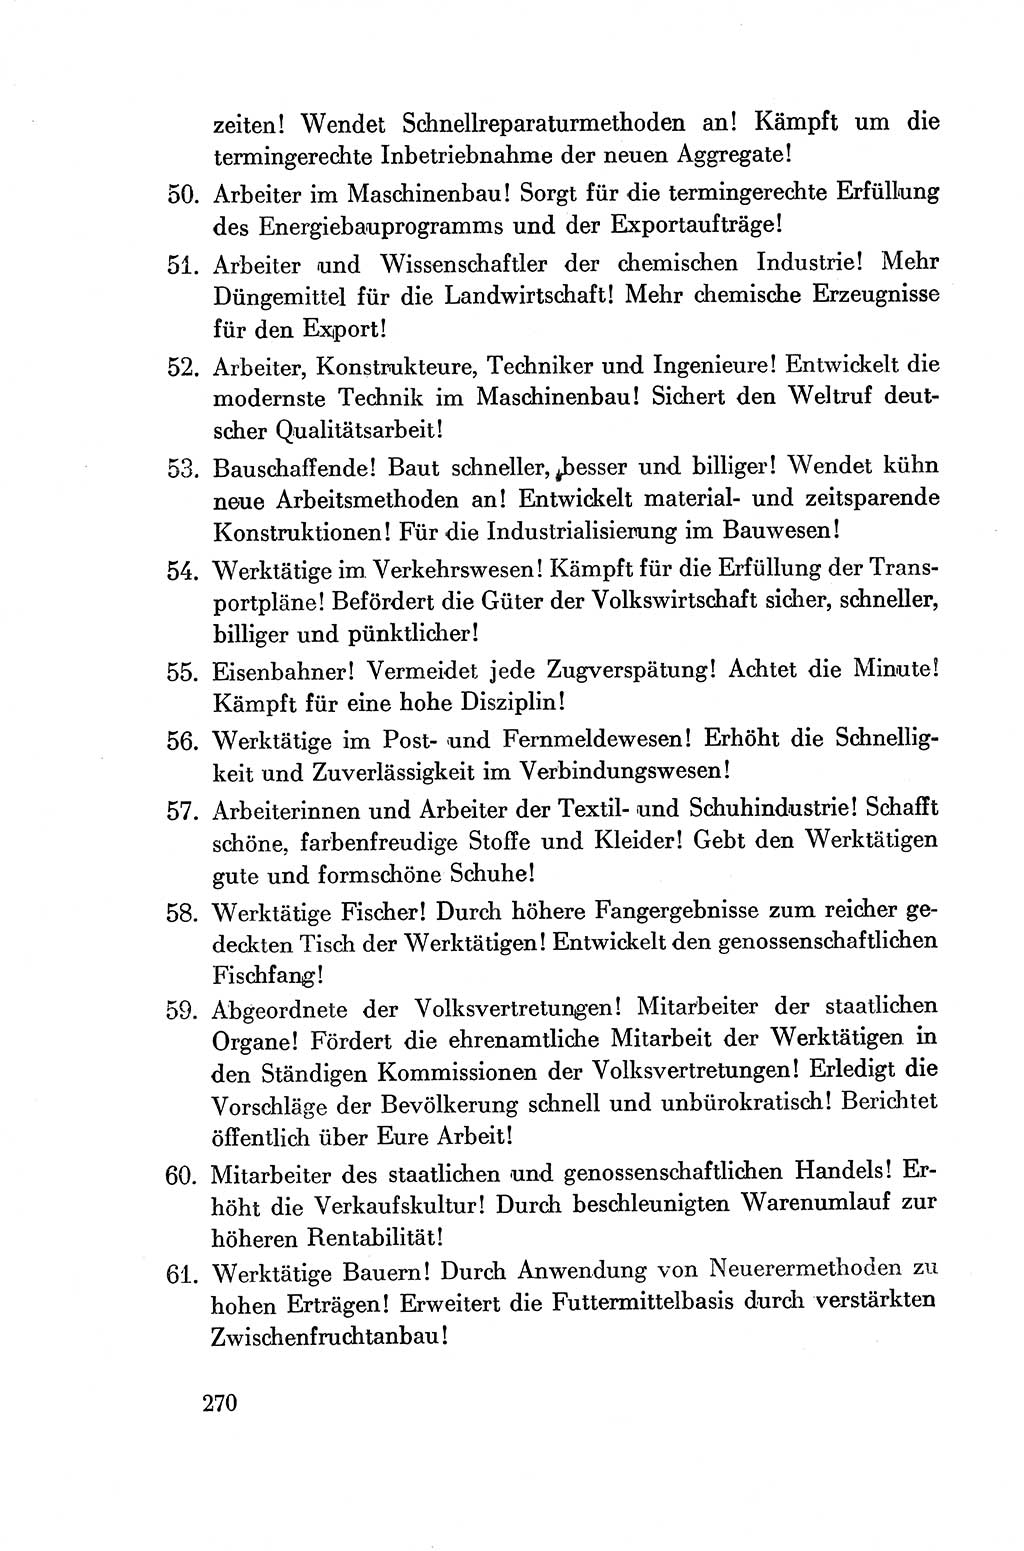 Dokumente der Sozialistischen Einheitspartei Deutschlands (SED) [Deutsche Demokratische Republik (DDR)] 1954-1955, Seite 270 (Dok. SED DDR 1954-1955, S. 270)